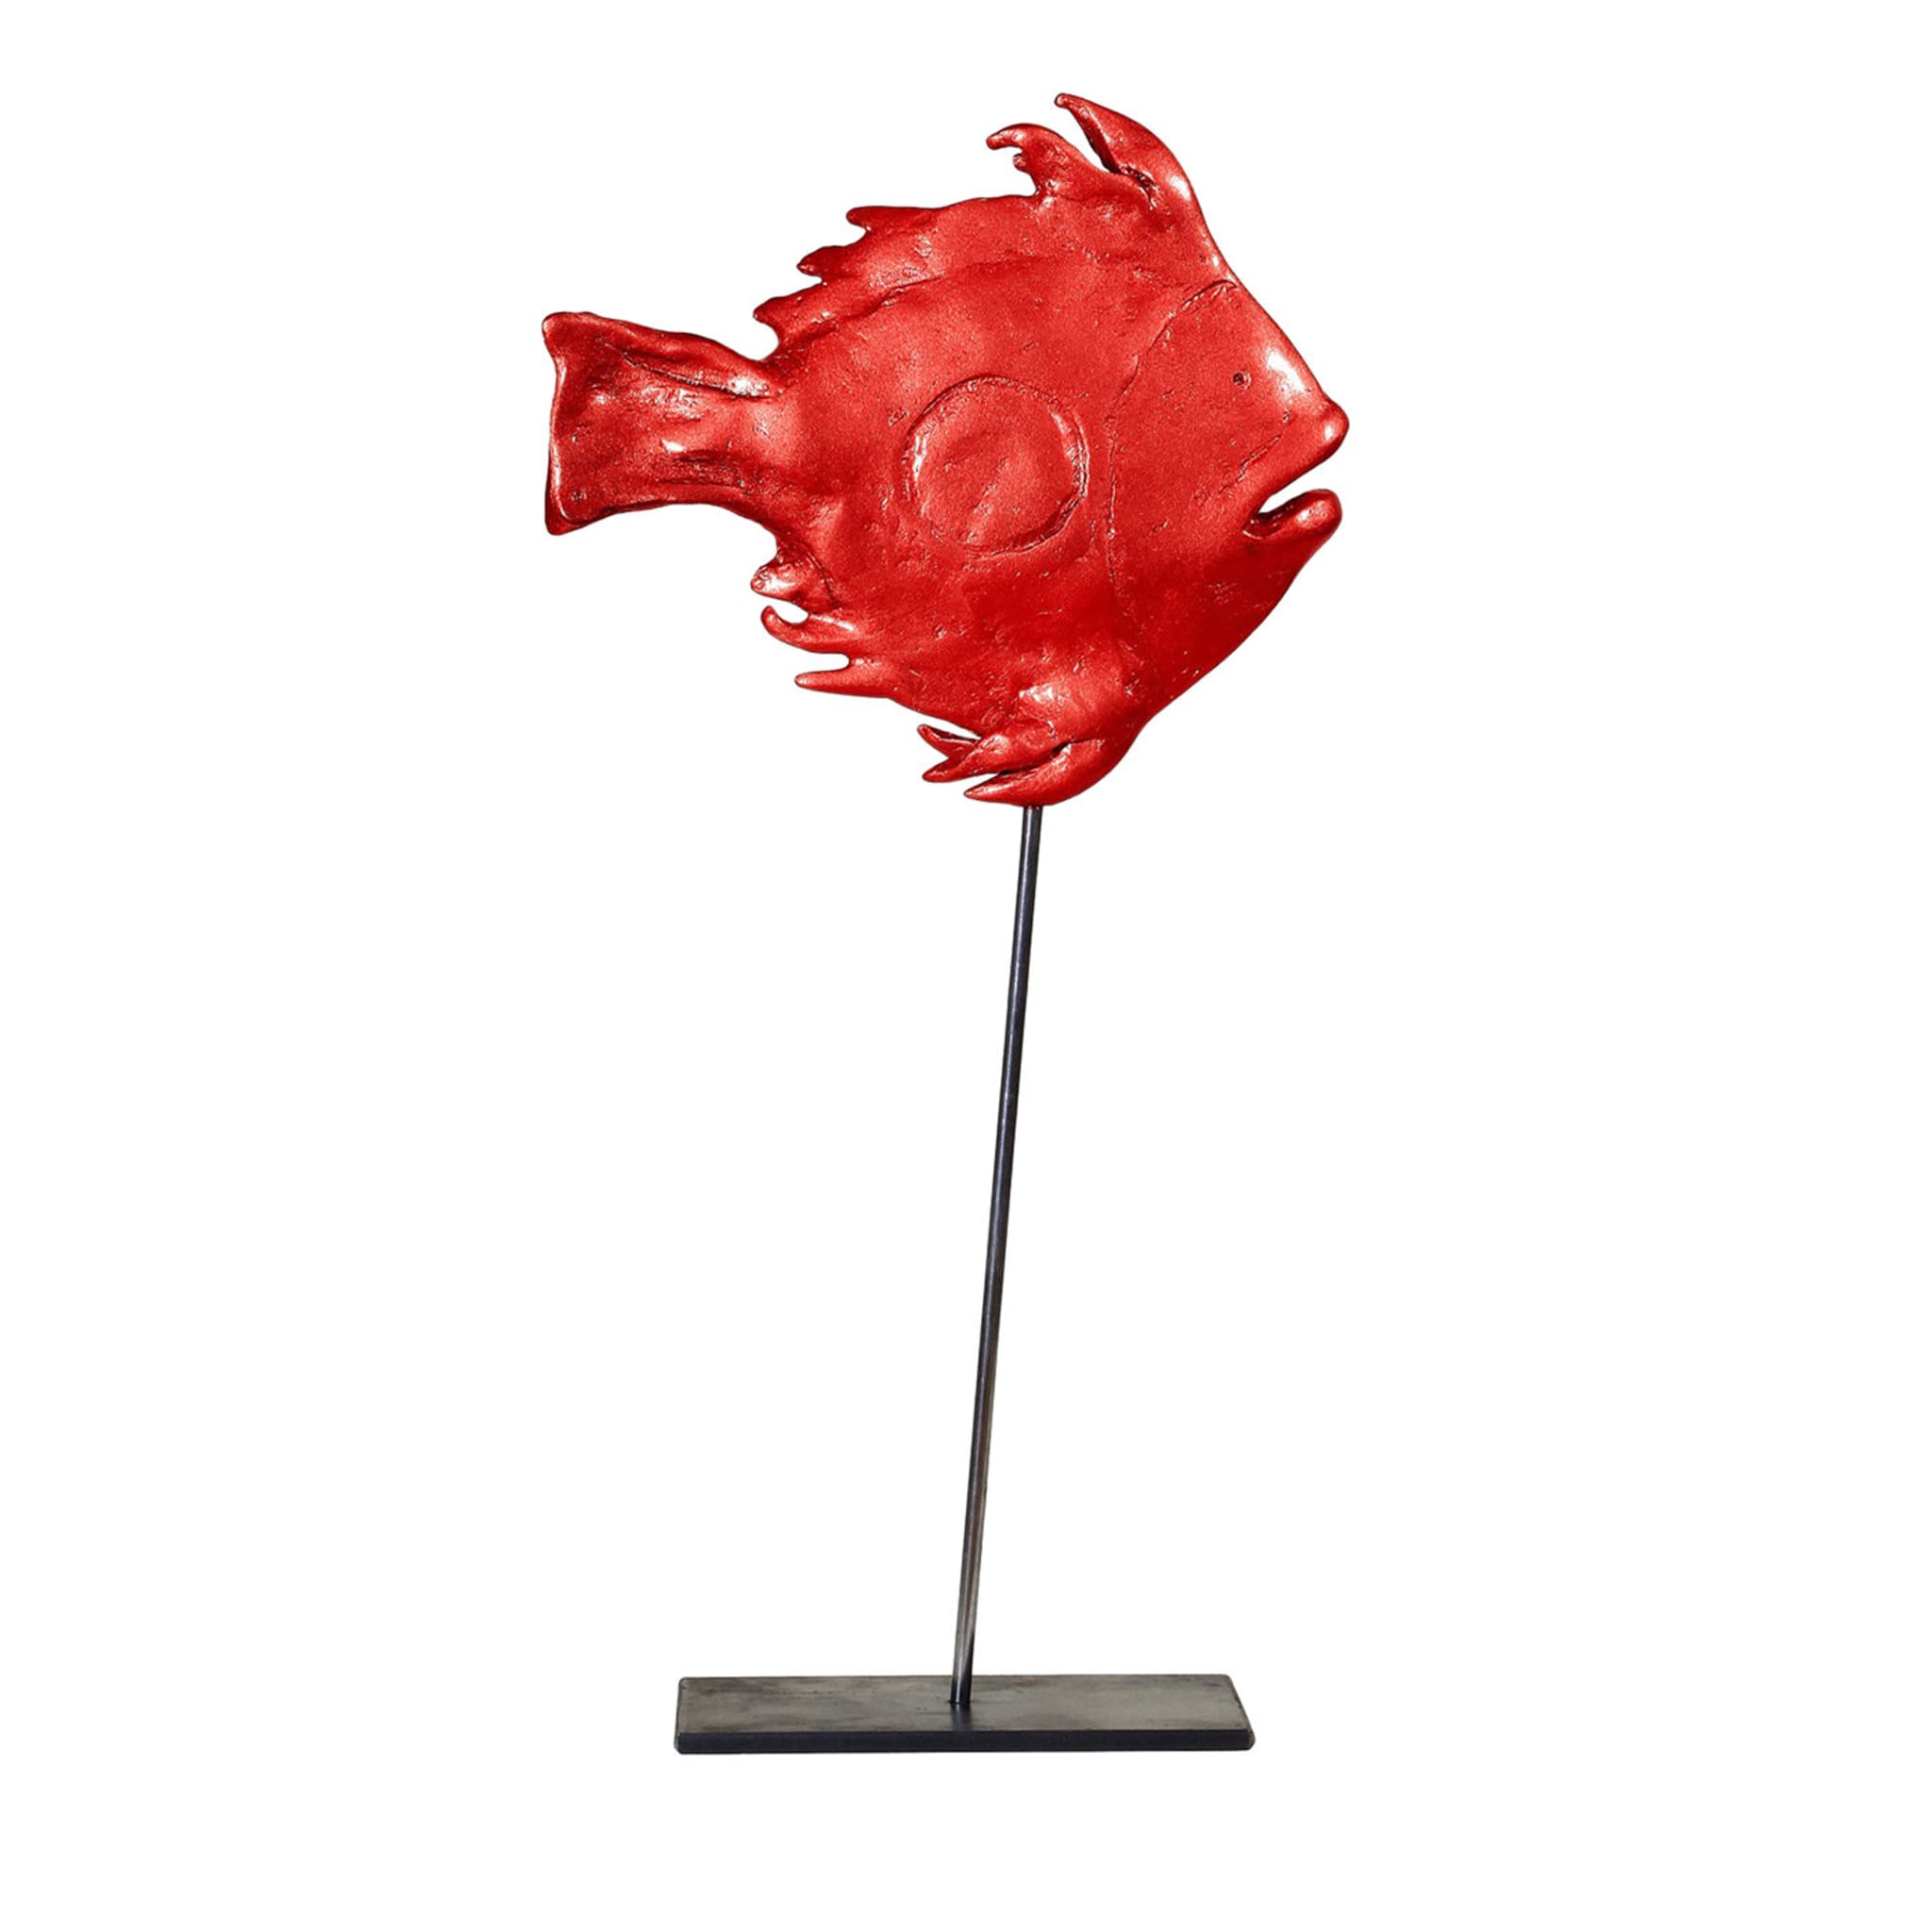 San Pietro Rote Fisch-Skulptur - Hauptansicht